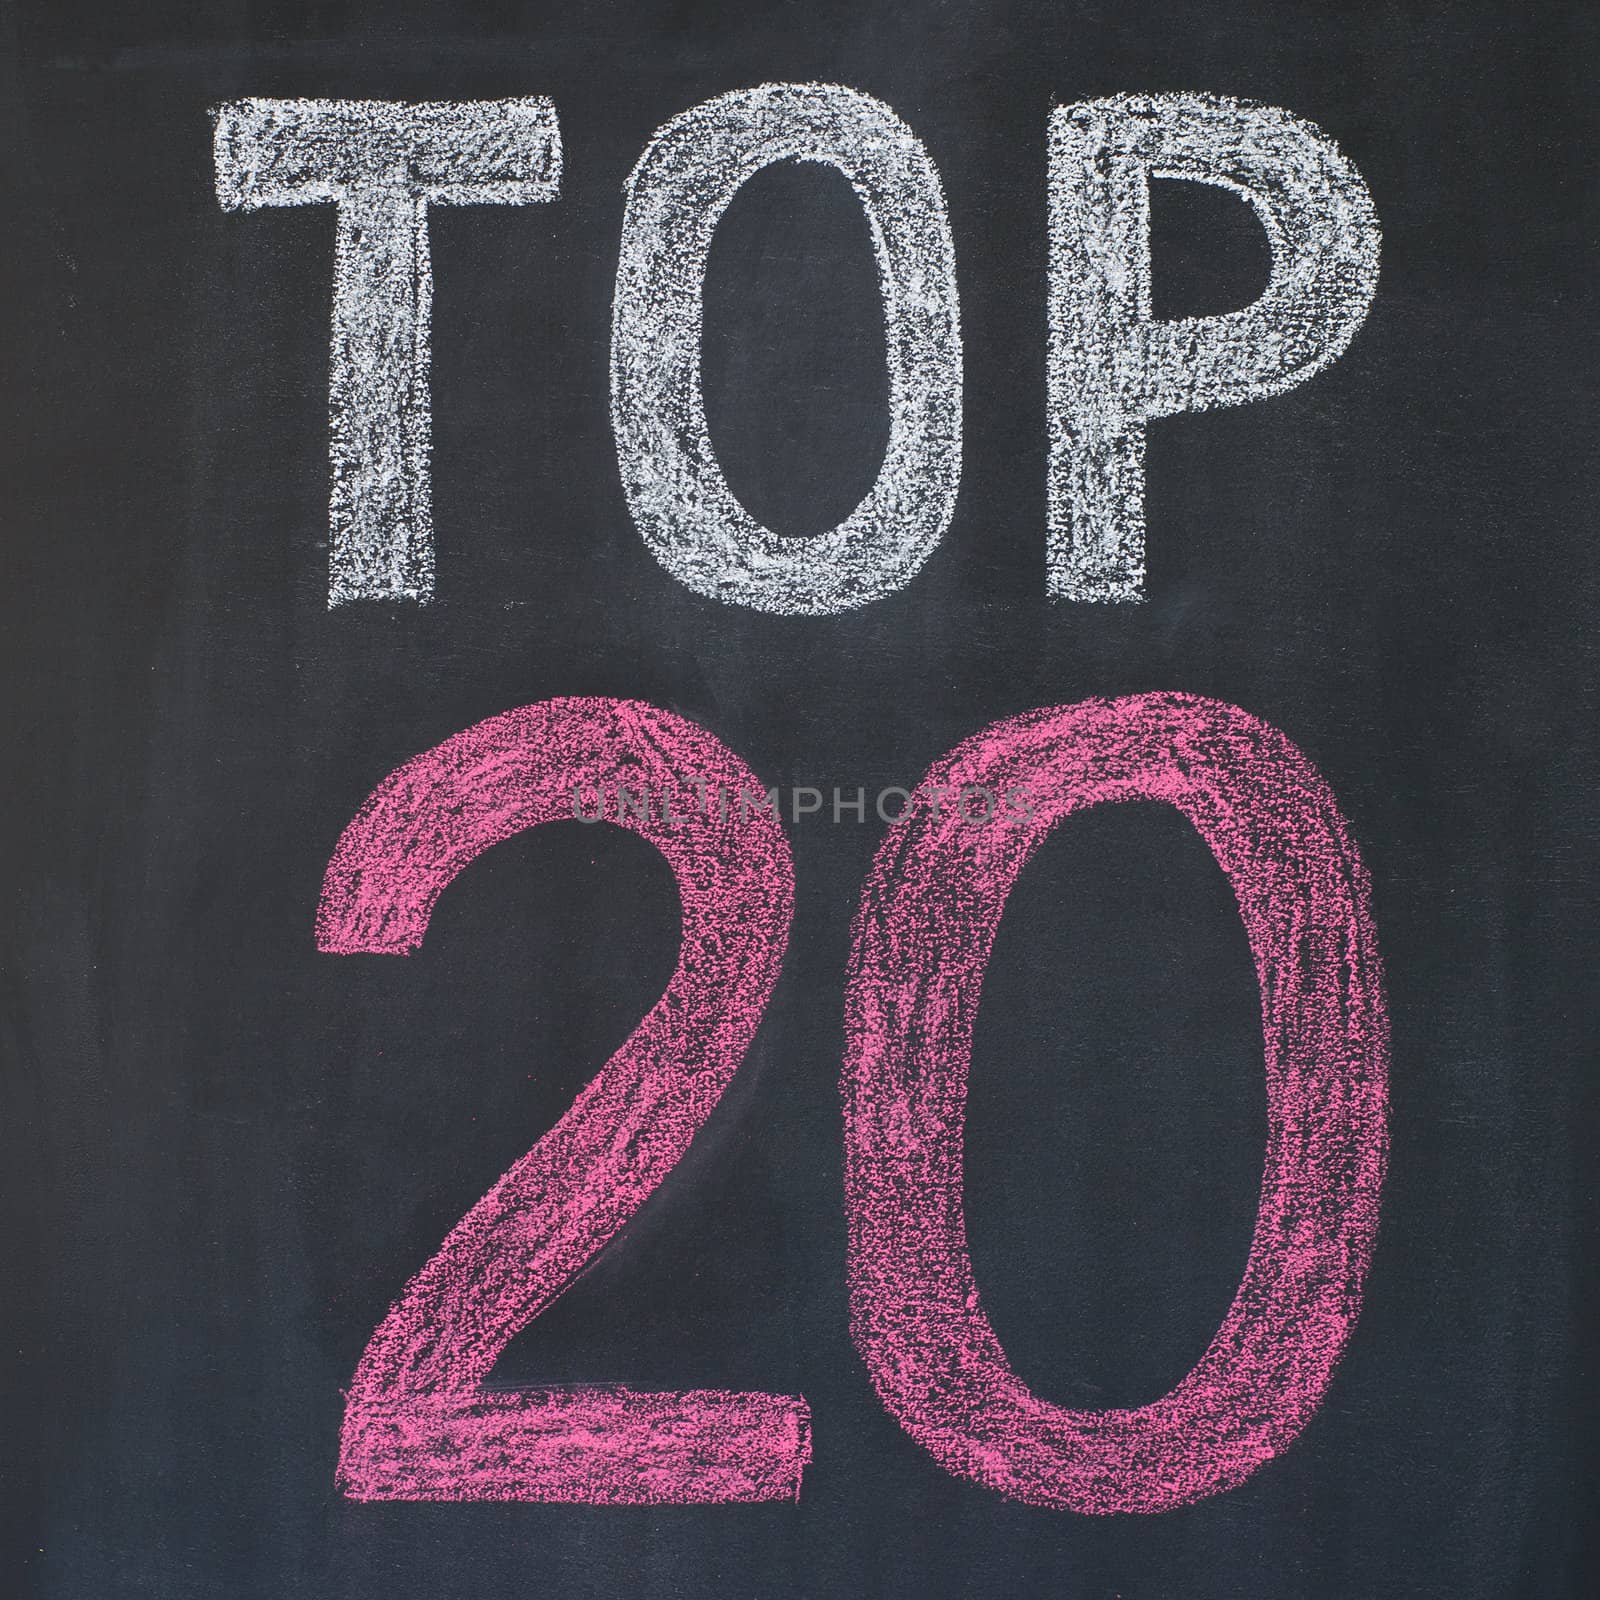 Word "Top 20'' written by a chalk on a blackboard